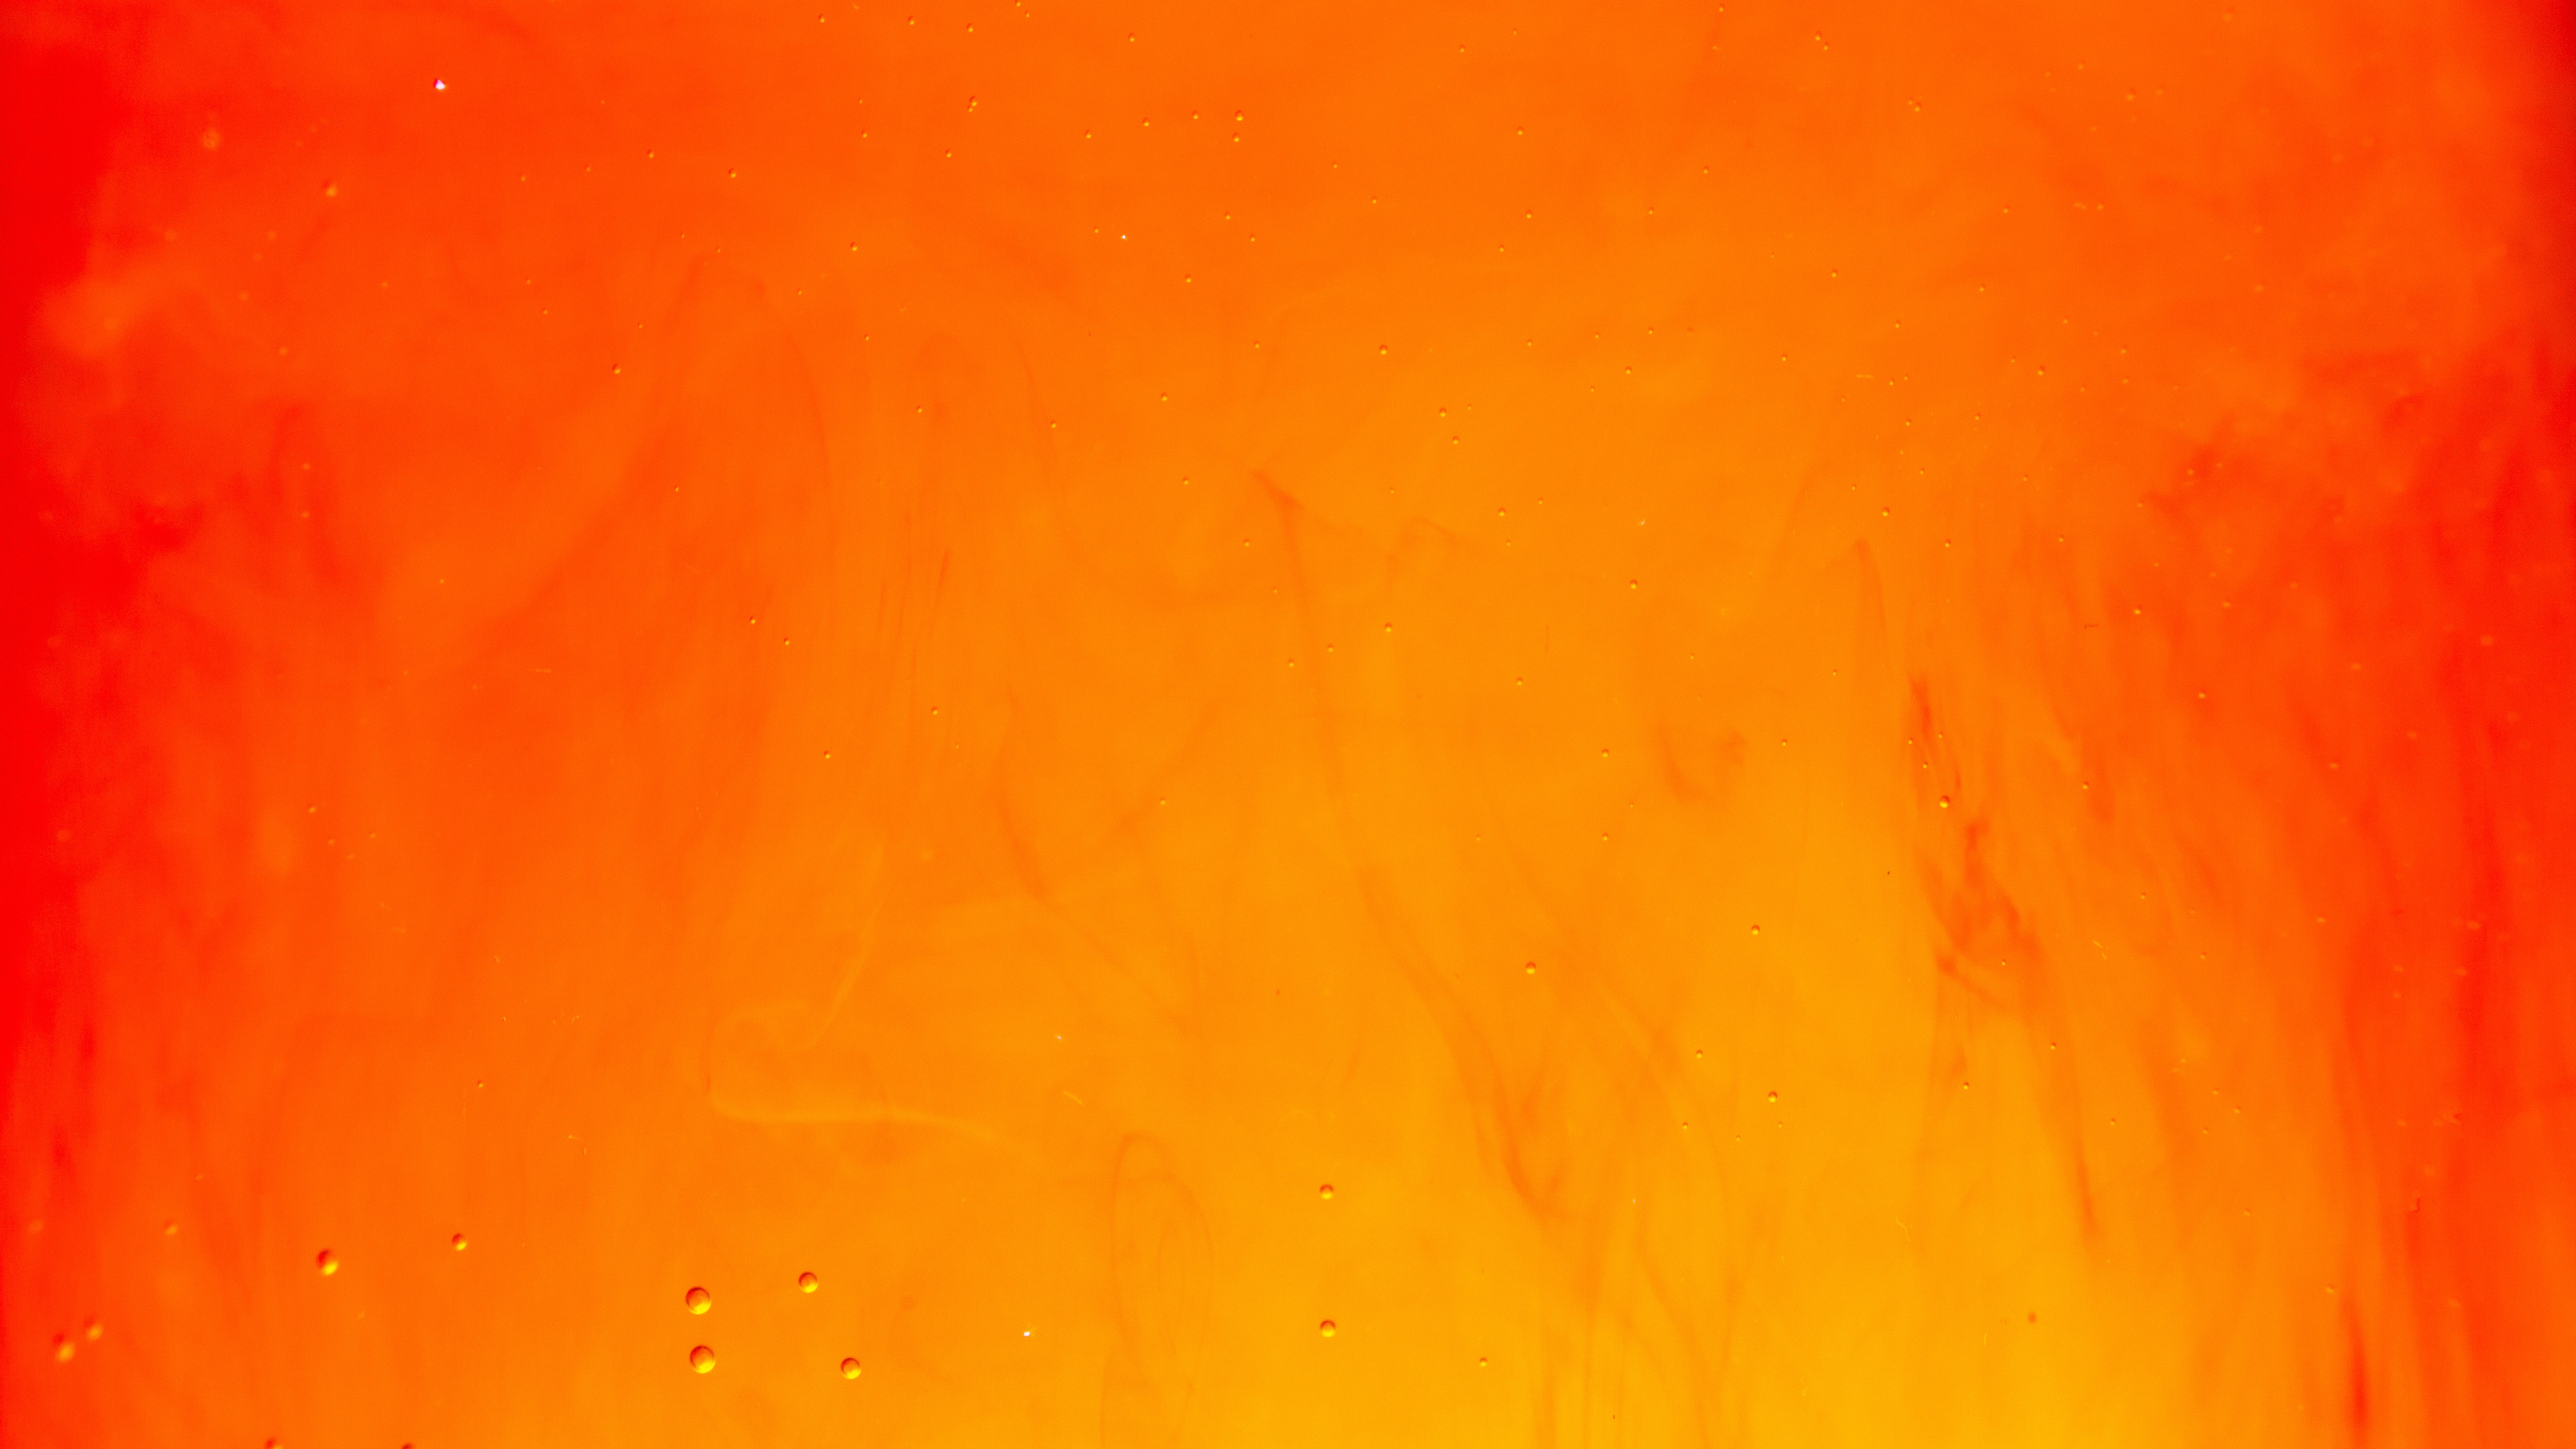 Orange 4k Ultra HD Wallpaper by Lucas Benjamin